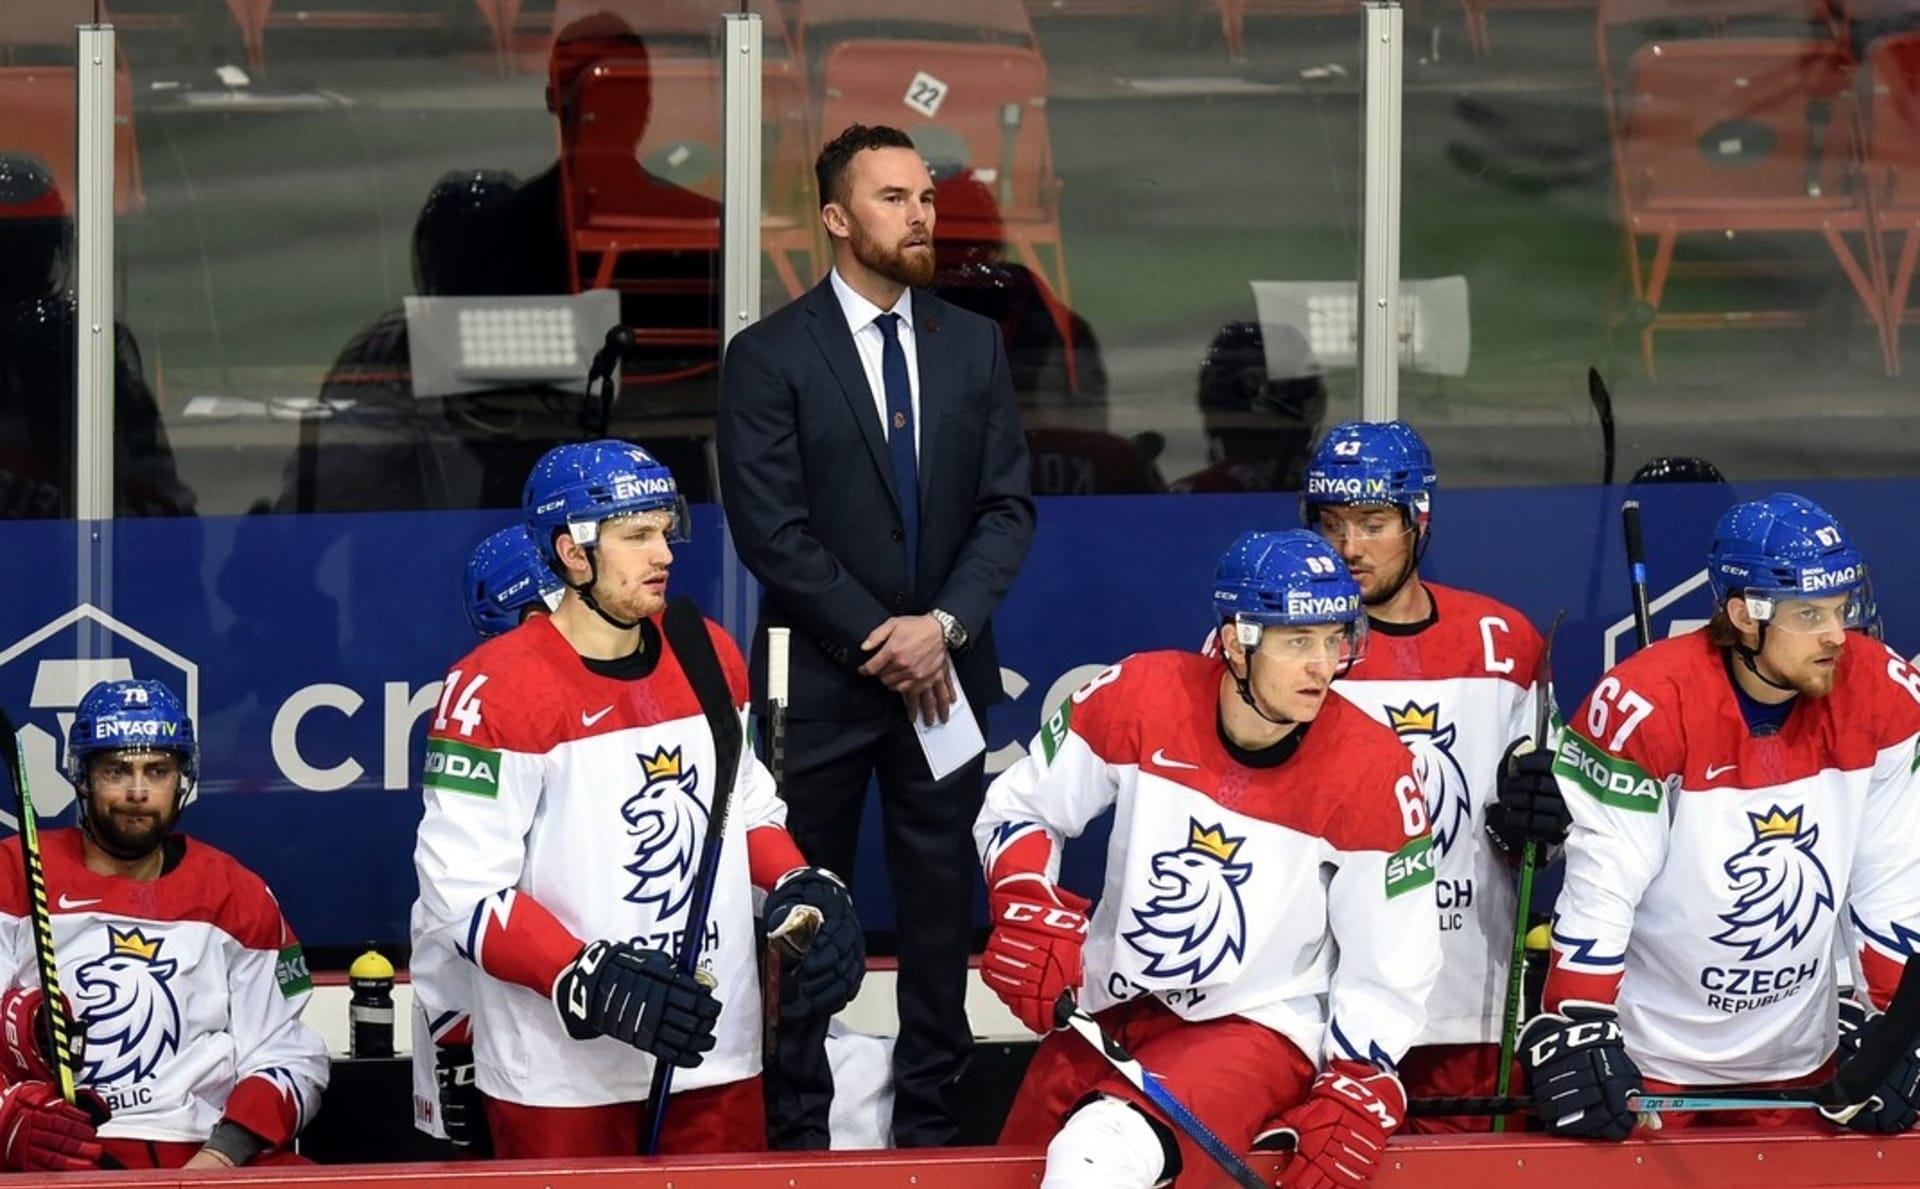 Kde jsou emoce? ptají se čeští fanoušci v kontextu vystupování trenéra hokejové reprezentace Filipa Pešána.